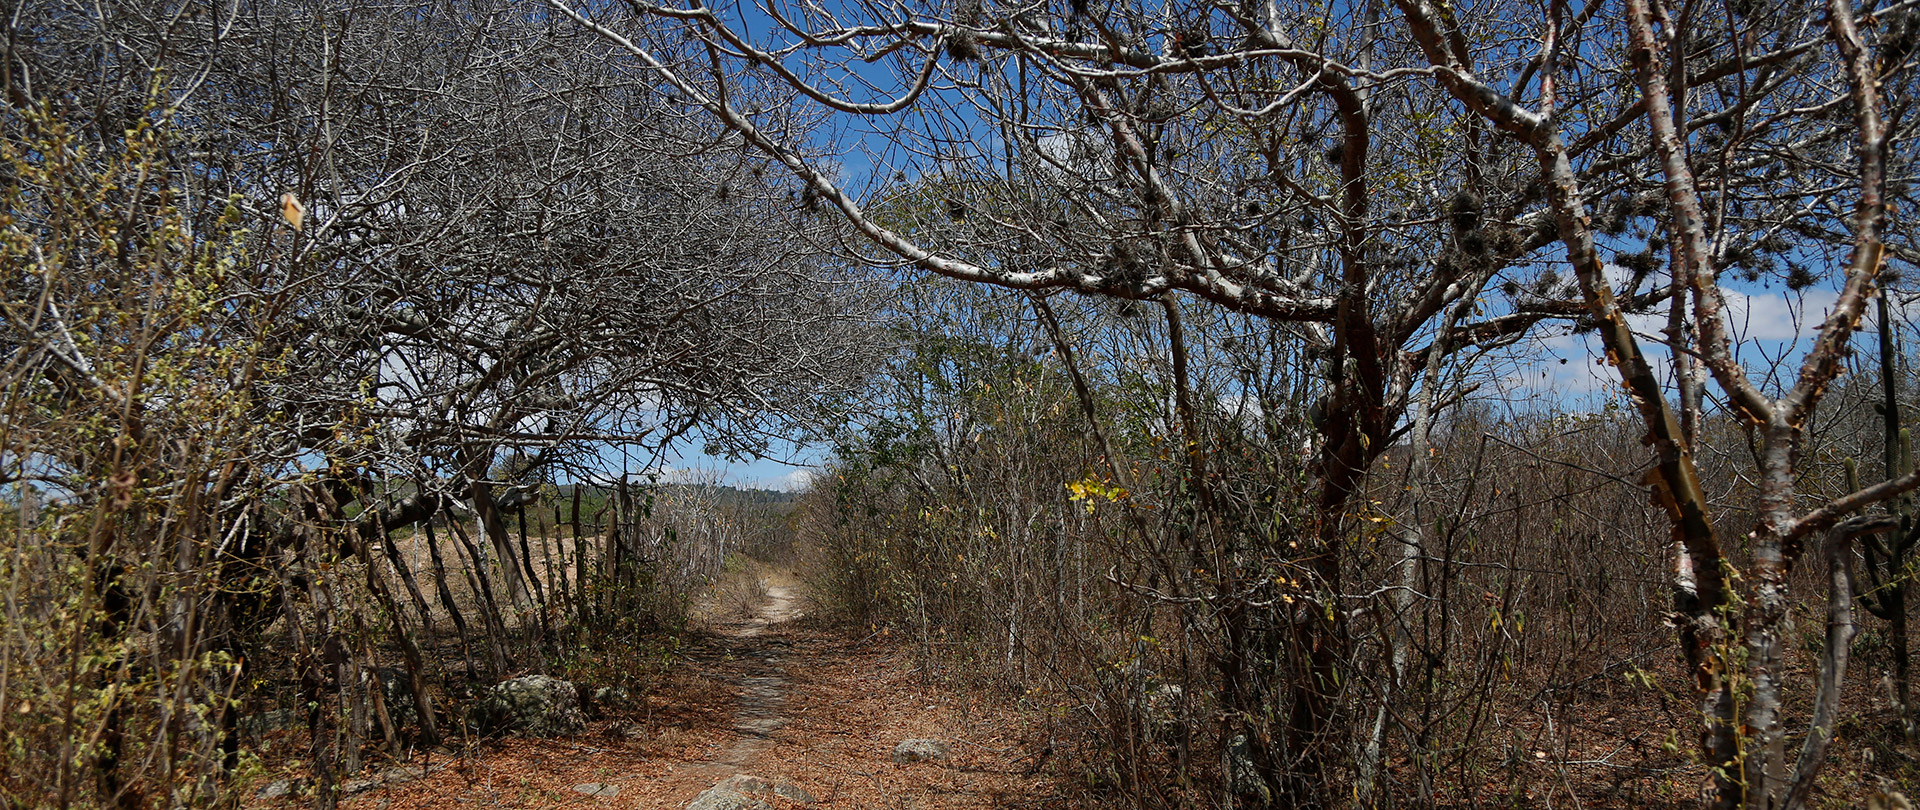 O acesso à Pedra do Cachorro é feito por trilhas abertas no meio da vegetação da caatinga
